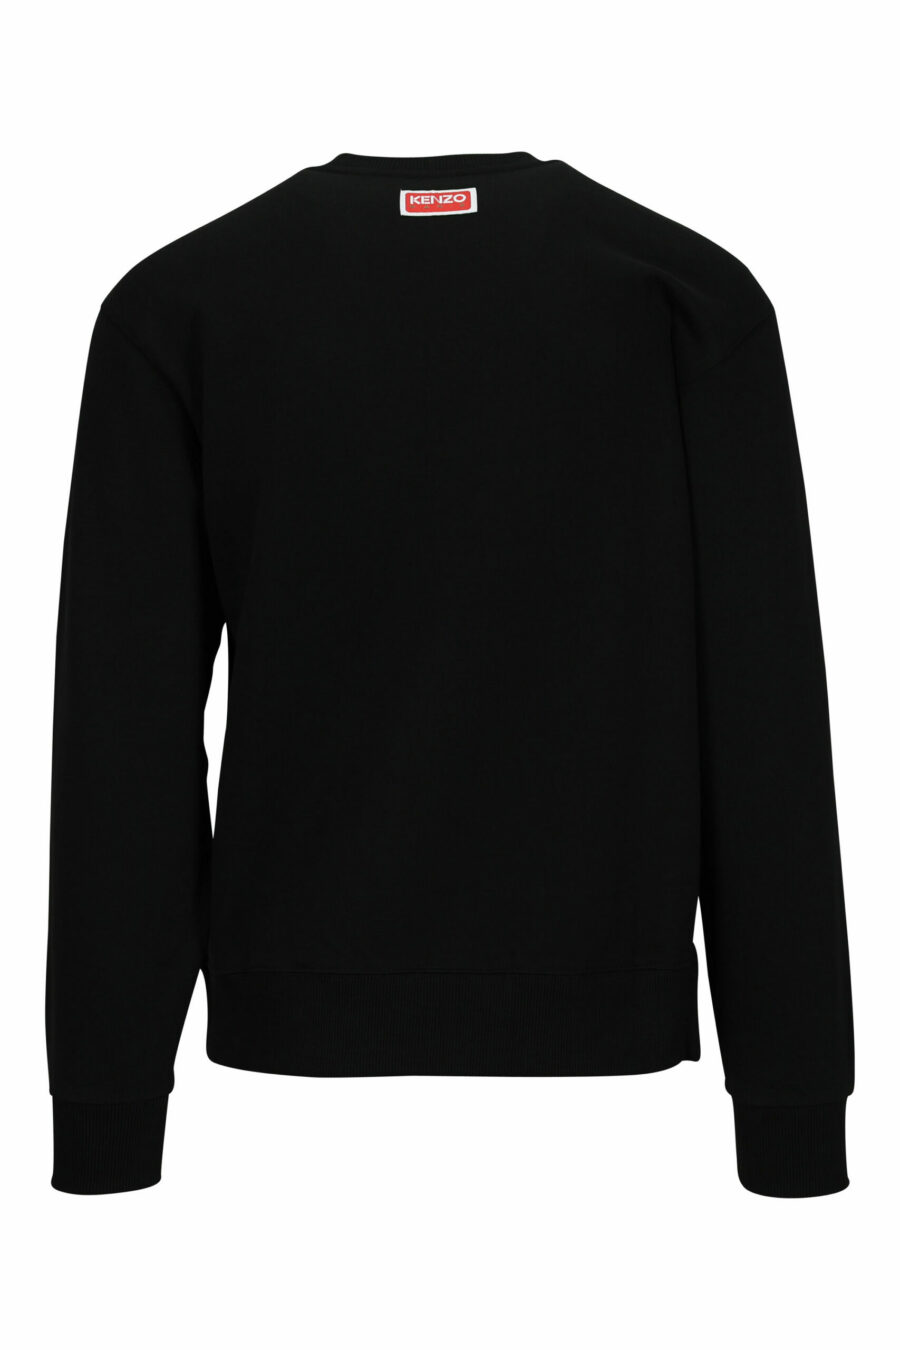 Schwarzes Sweatshirt in Übergröße mit großem, geprägtem Elefanten-Logo - 3612230552777 1 skaliert